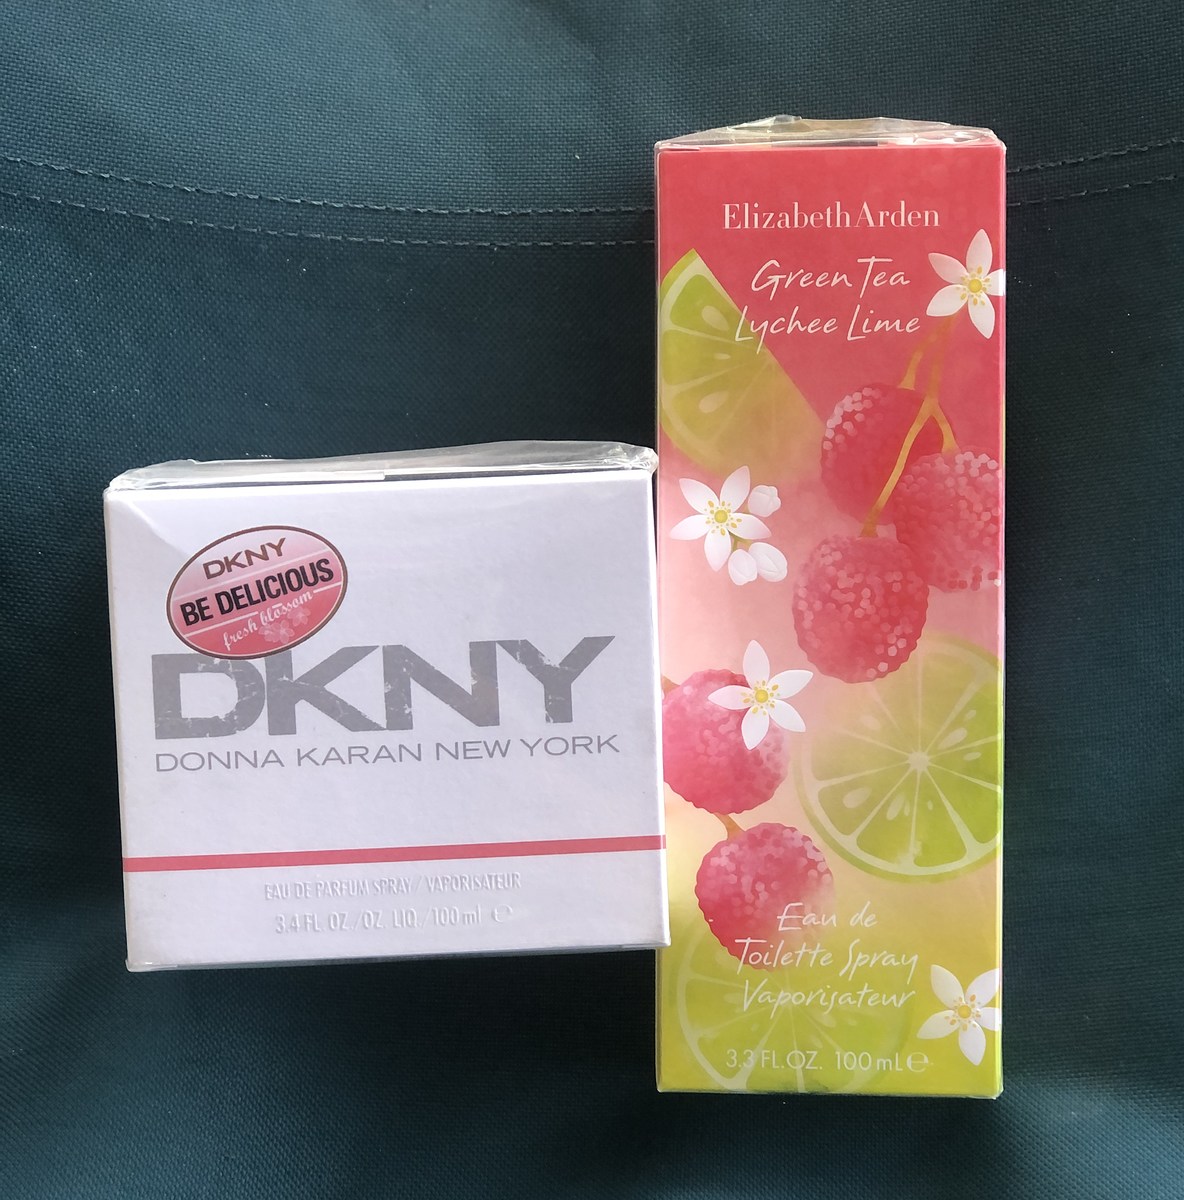 Elizabeth Arden green tea lychee lime.  100 ml.  650 บาทค่ะ


DKNY fresh blossom. 100 ml.    990 